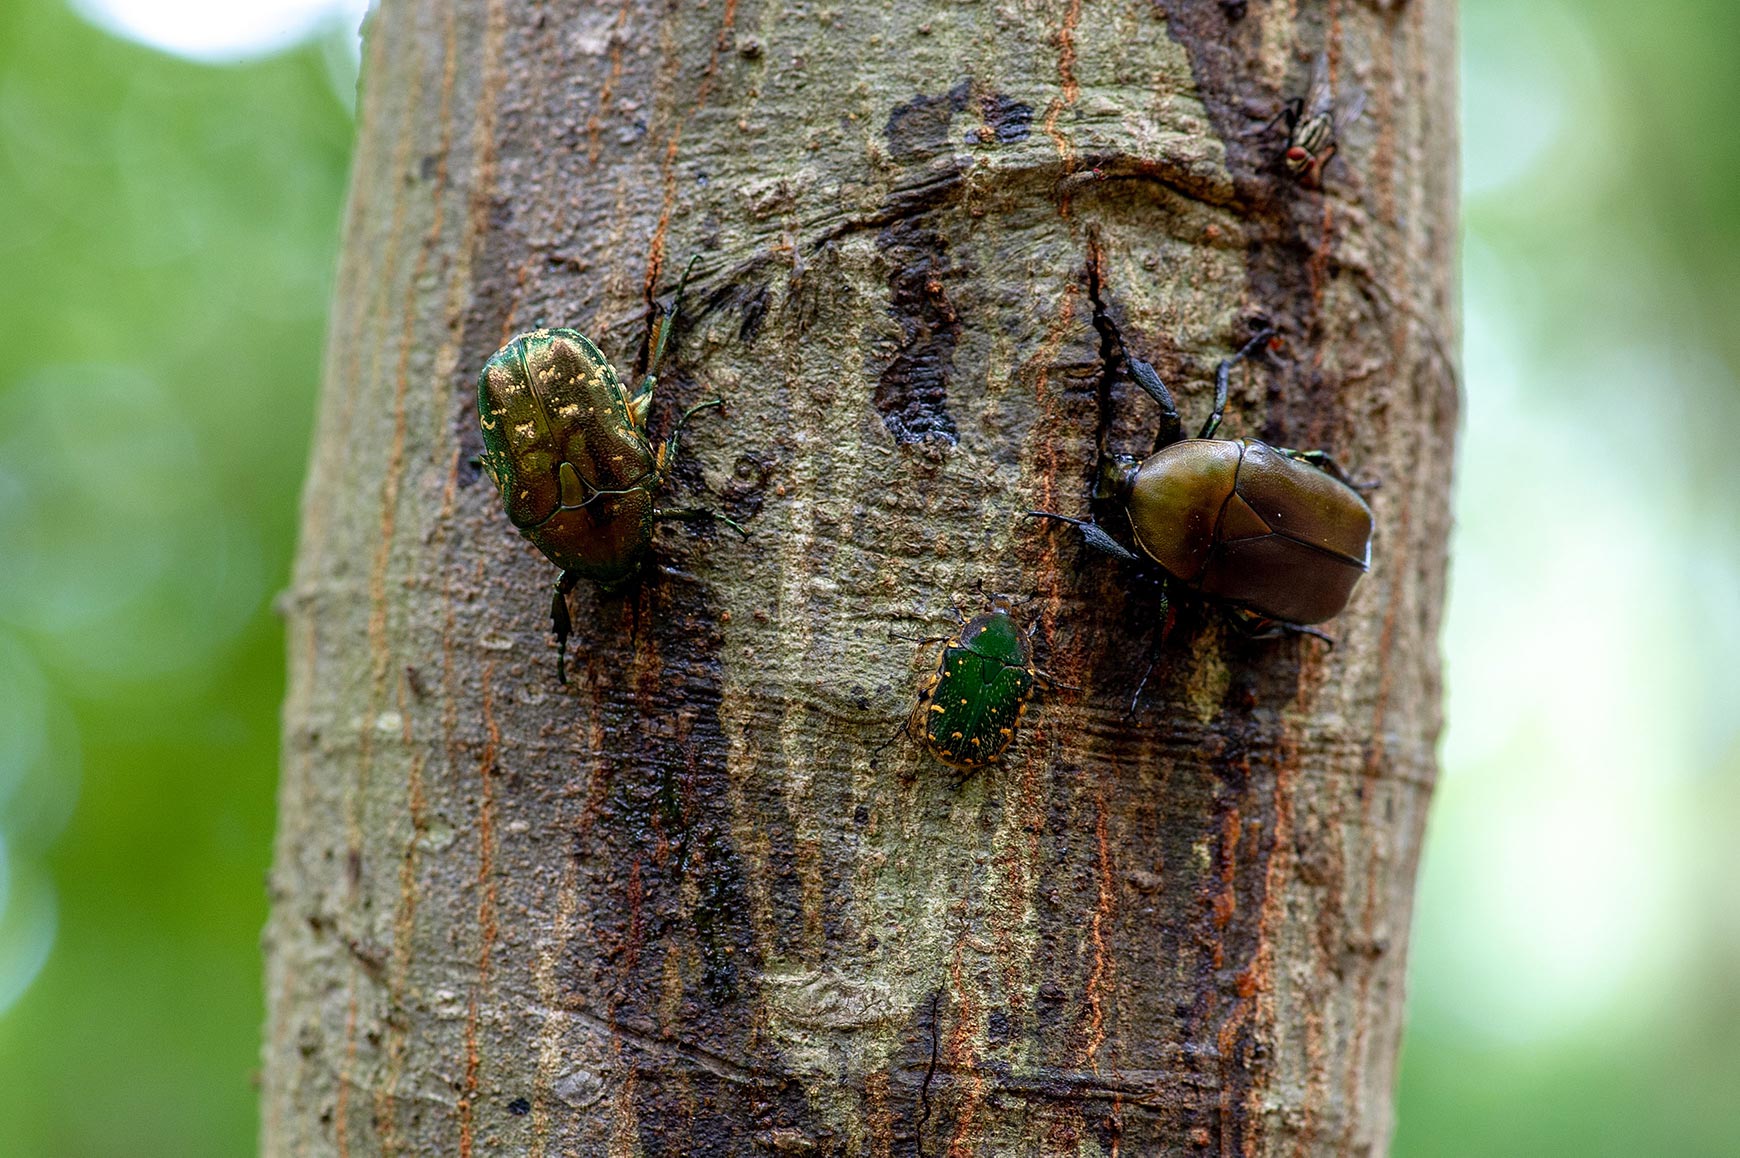 カナブンの特徴や成長 虫の写真と生態なら昆虫写真図鑑 ムシミル